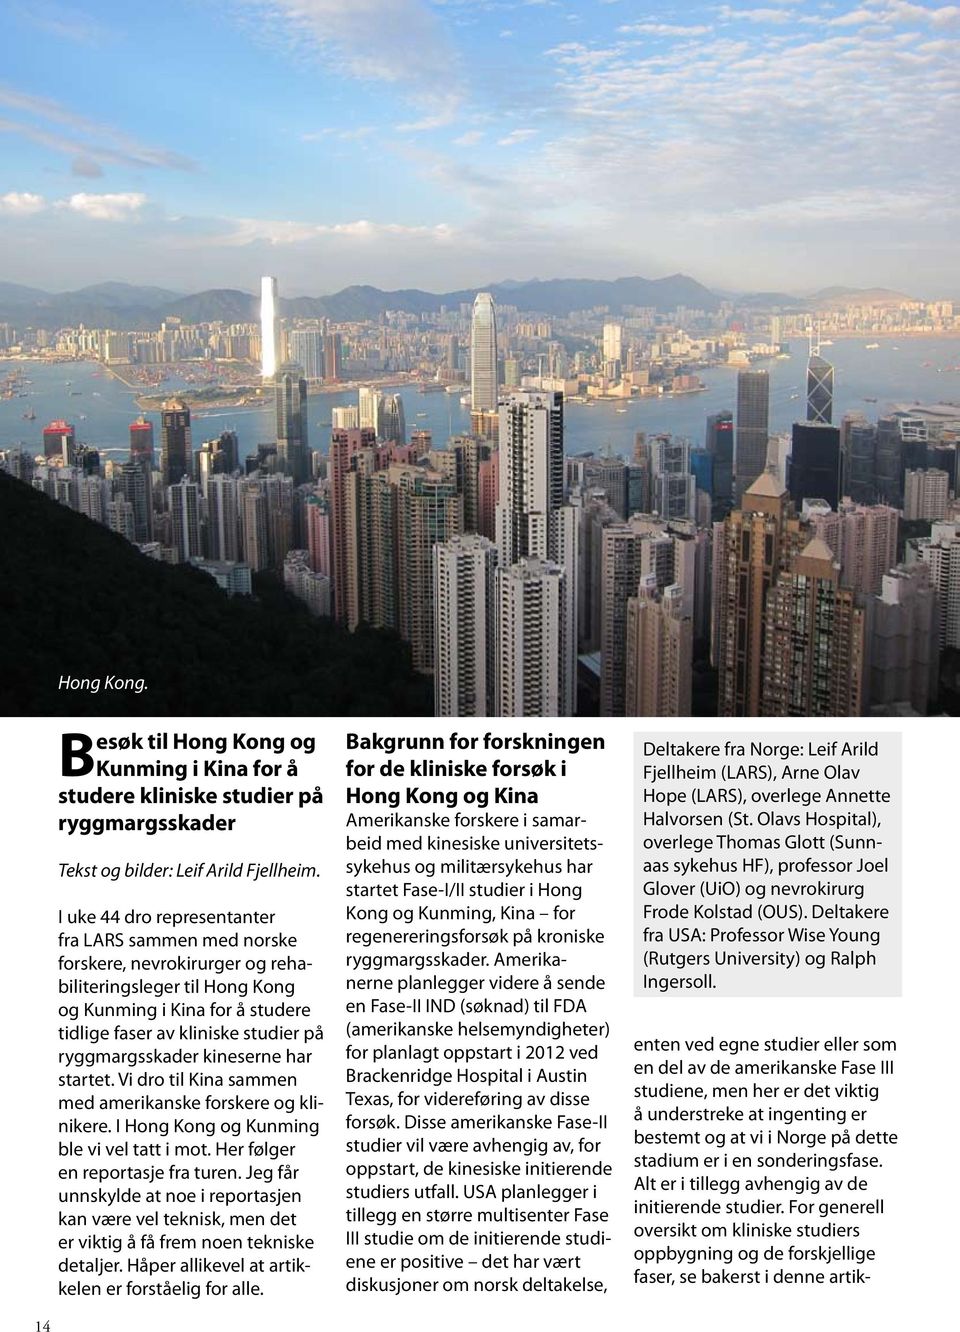 ryggmargsskader kineserne har startet. Vi dro til Kina sammen med amerikanske forskere og klinikere. I Hong Kong og Kunming ble vi vel tatt i mot. Her følger en reportasje fra turen.